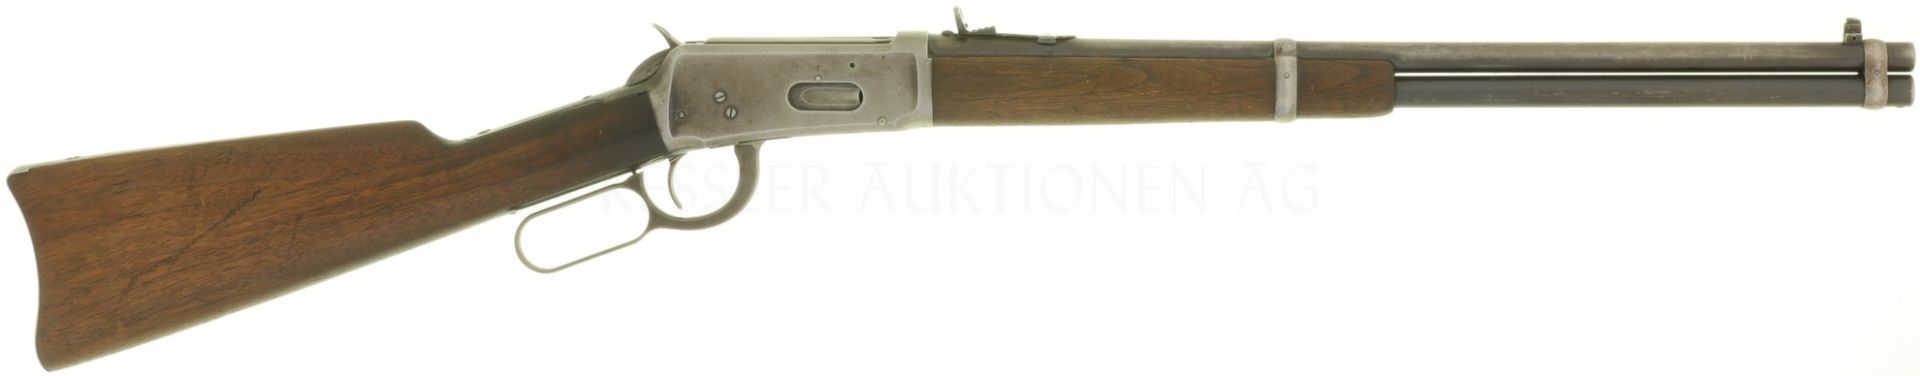 Unterhebelrepetierbüchse, Winchester 1894, hergestellt 1901, Kal. .30-30Win